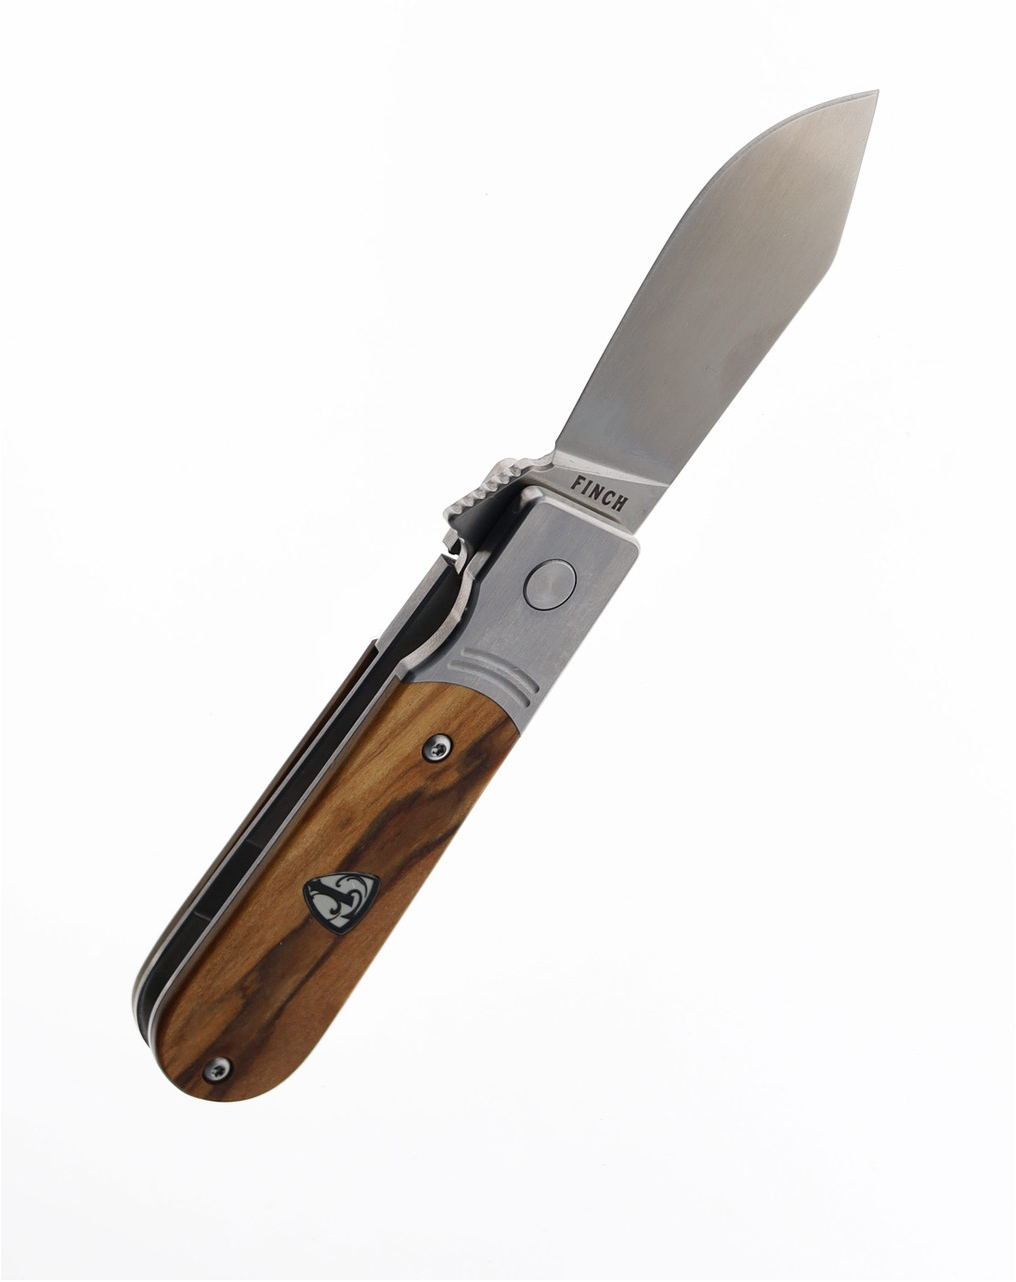 Finch Model 1929 Olivewood Folding Knife 154CM Plain Edge Satin Finish MD 206